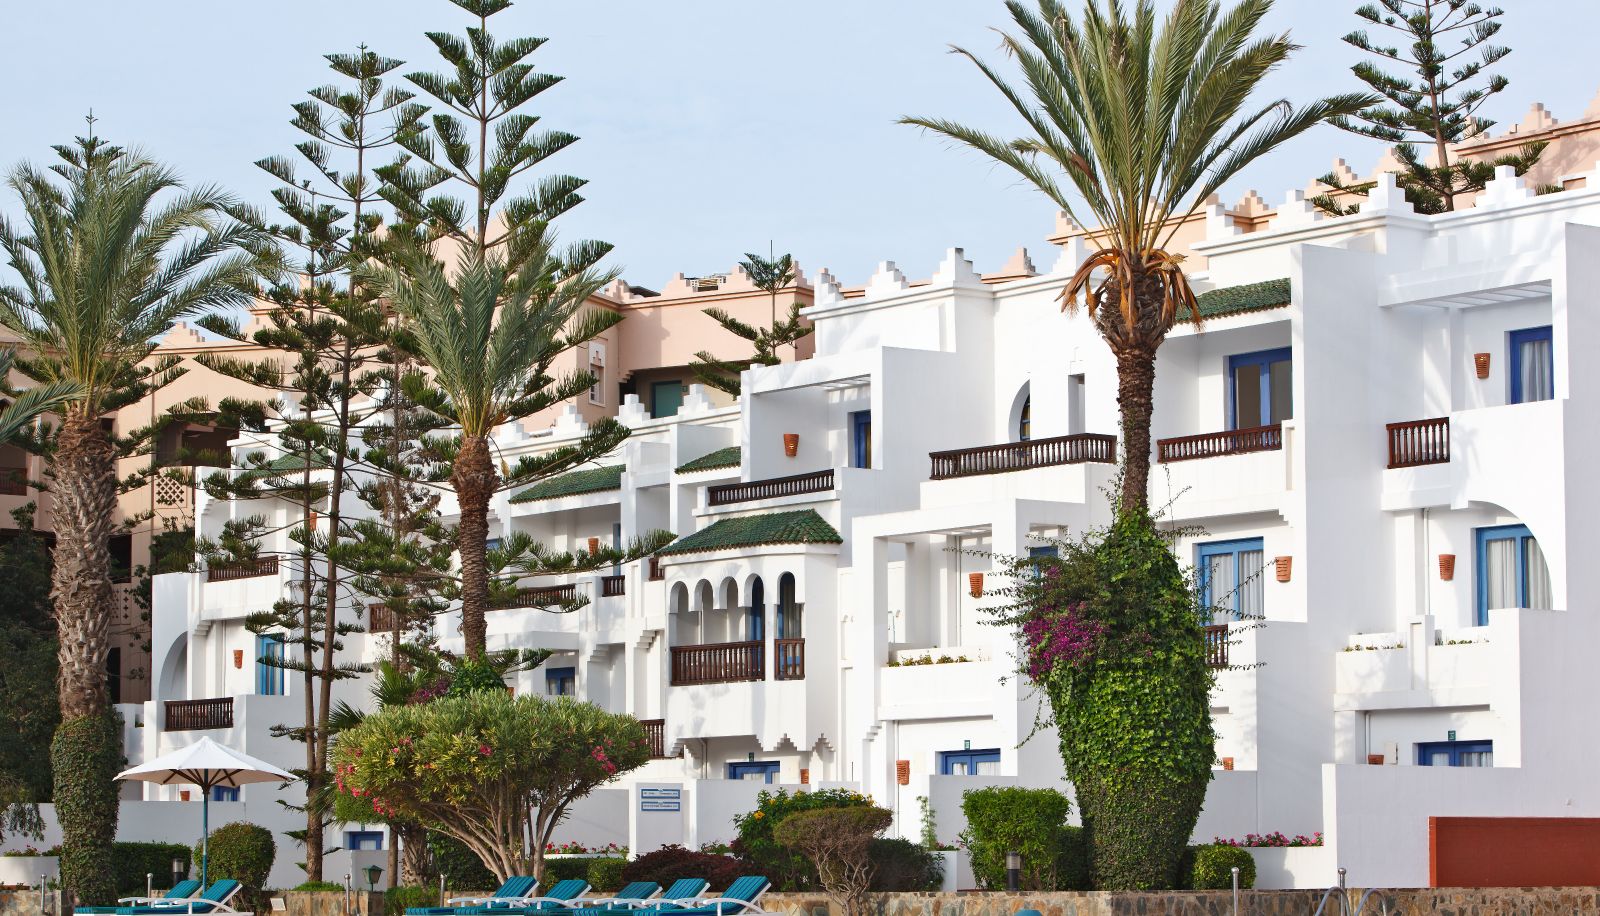 Hotel Atlantic Palace in Agadir - HOTEL DE